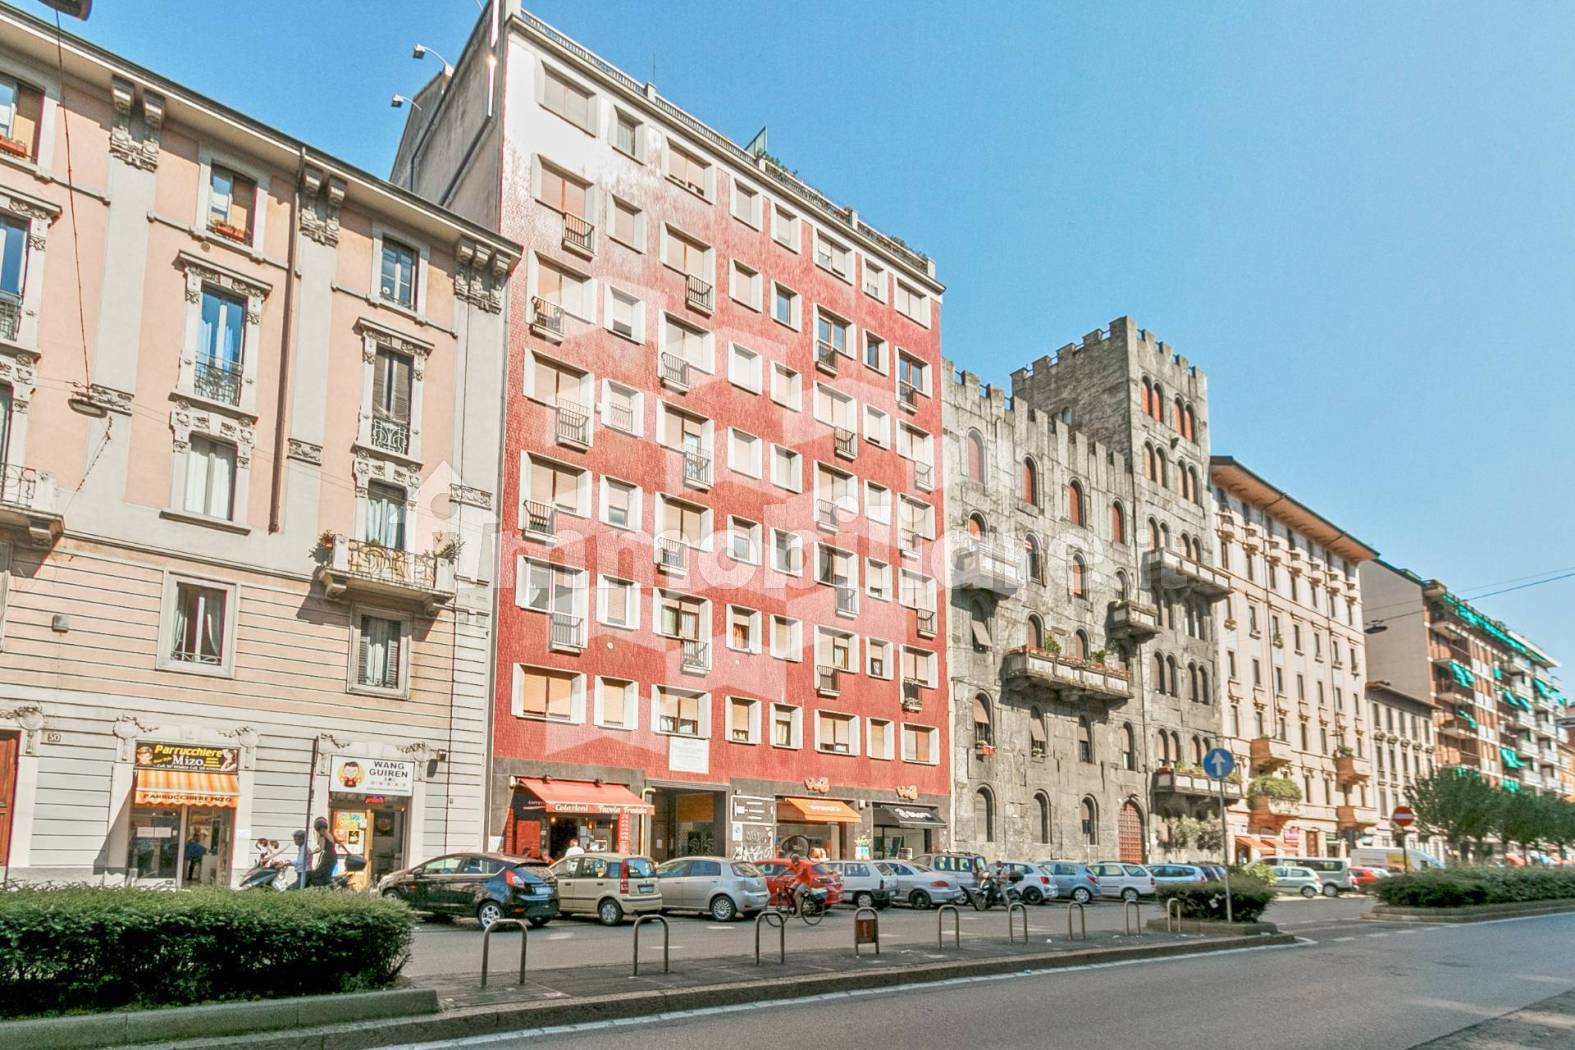 Case in vendita in zona Pasteur, Milano - Immobiliare.it